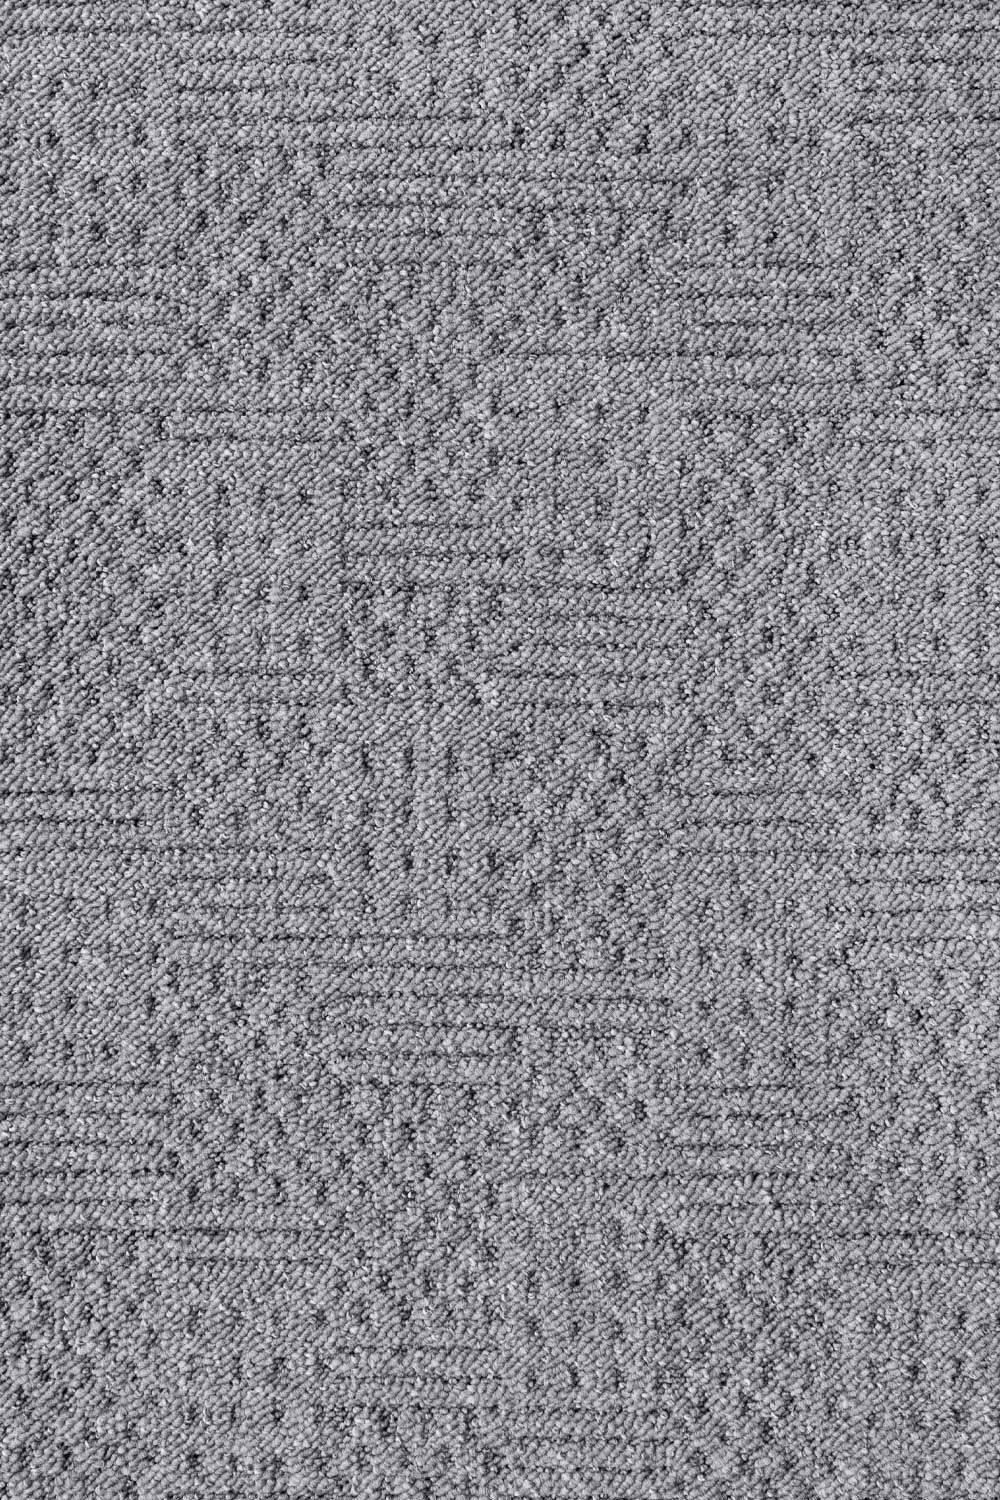 Metrážny koberec GLOBUS 6021 500 cm